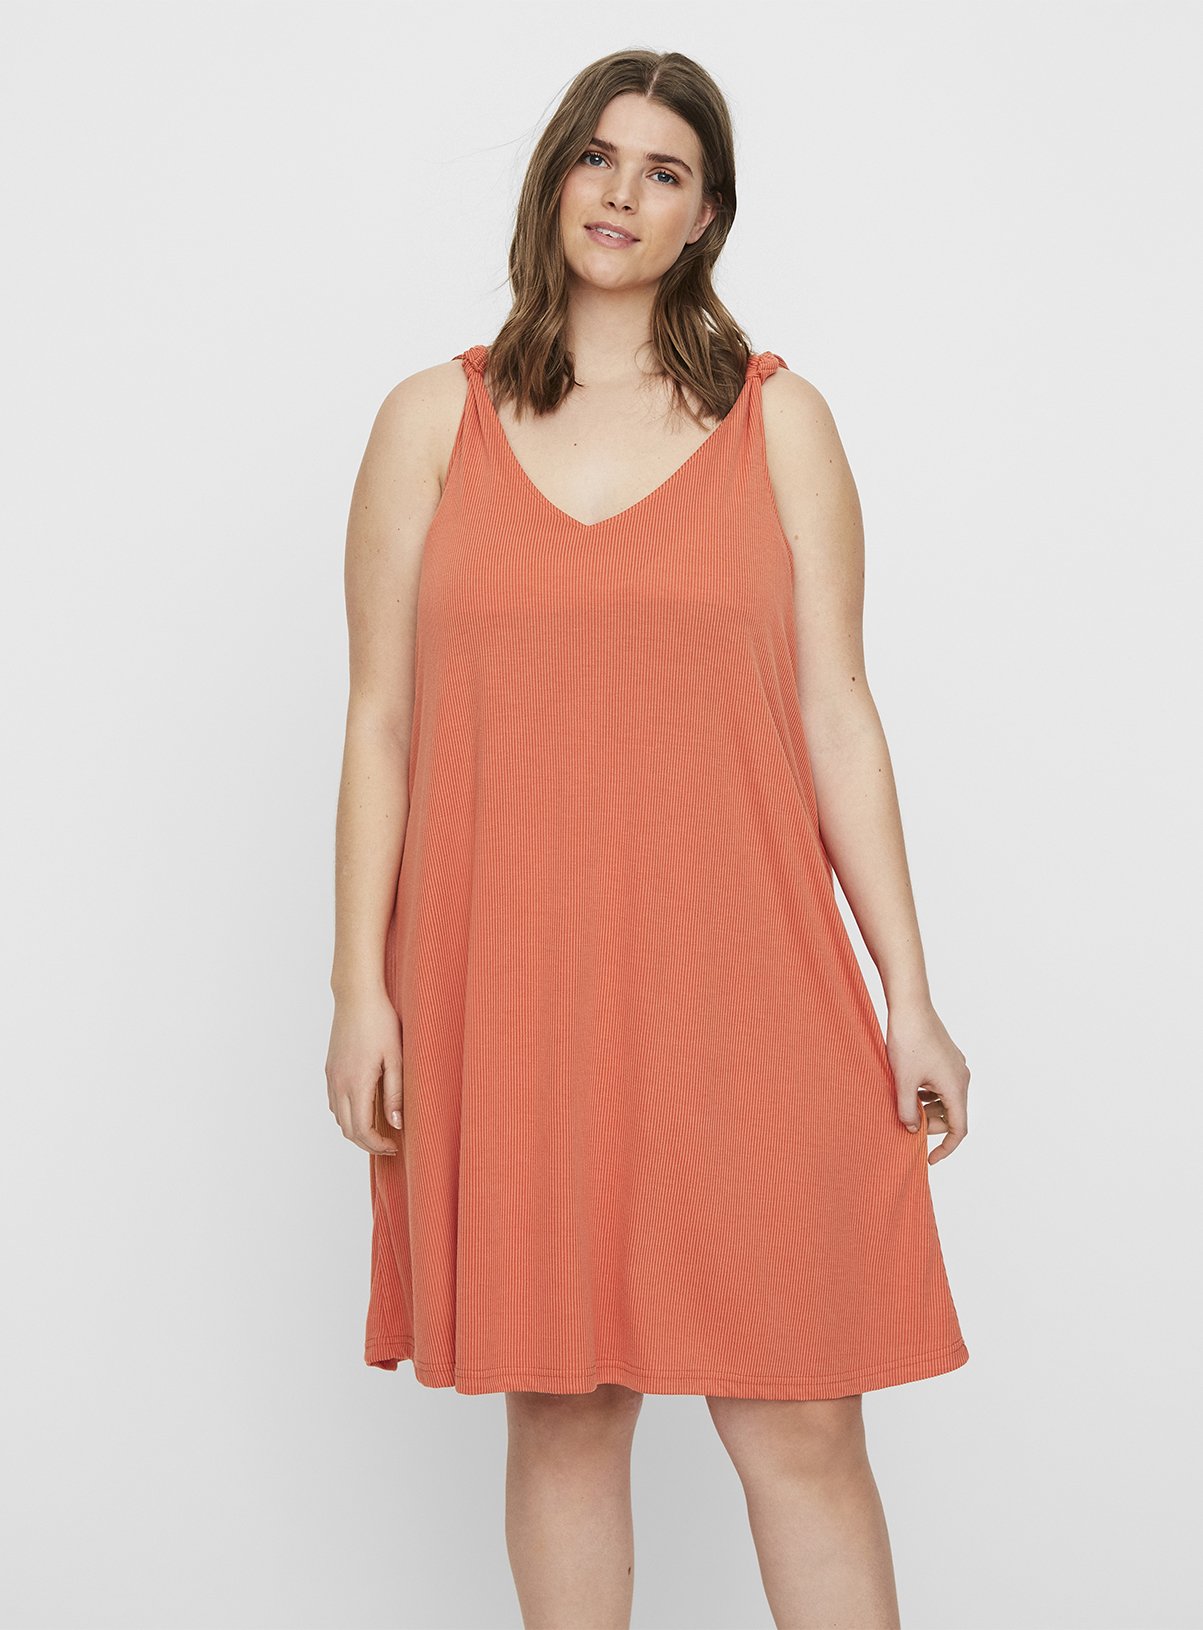 Peach Sleeveless Jersey Dress Review